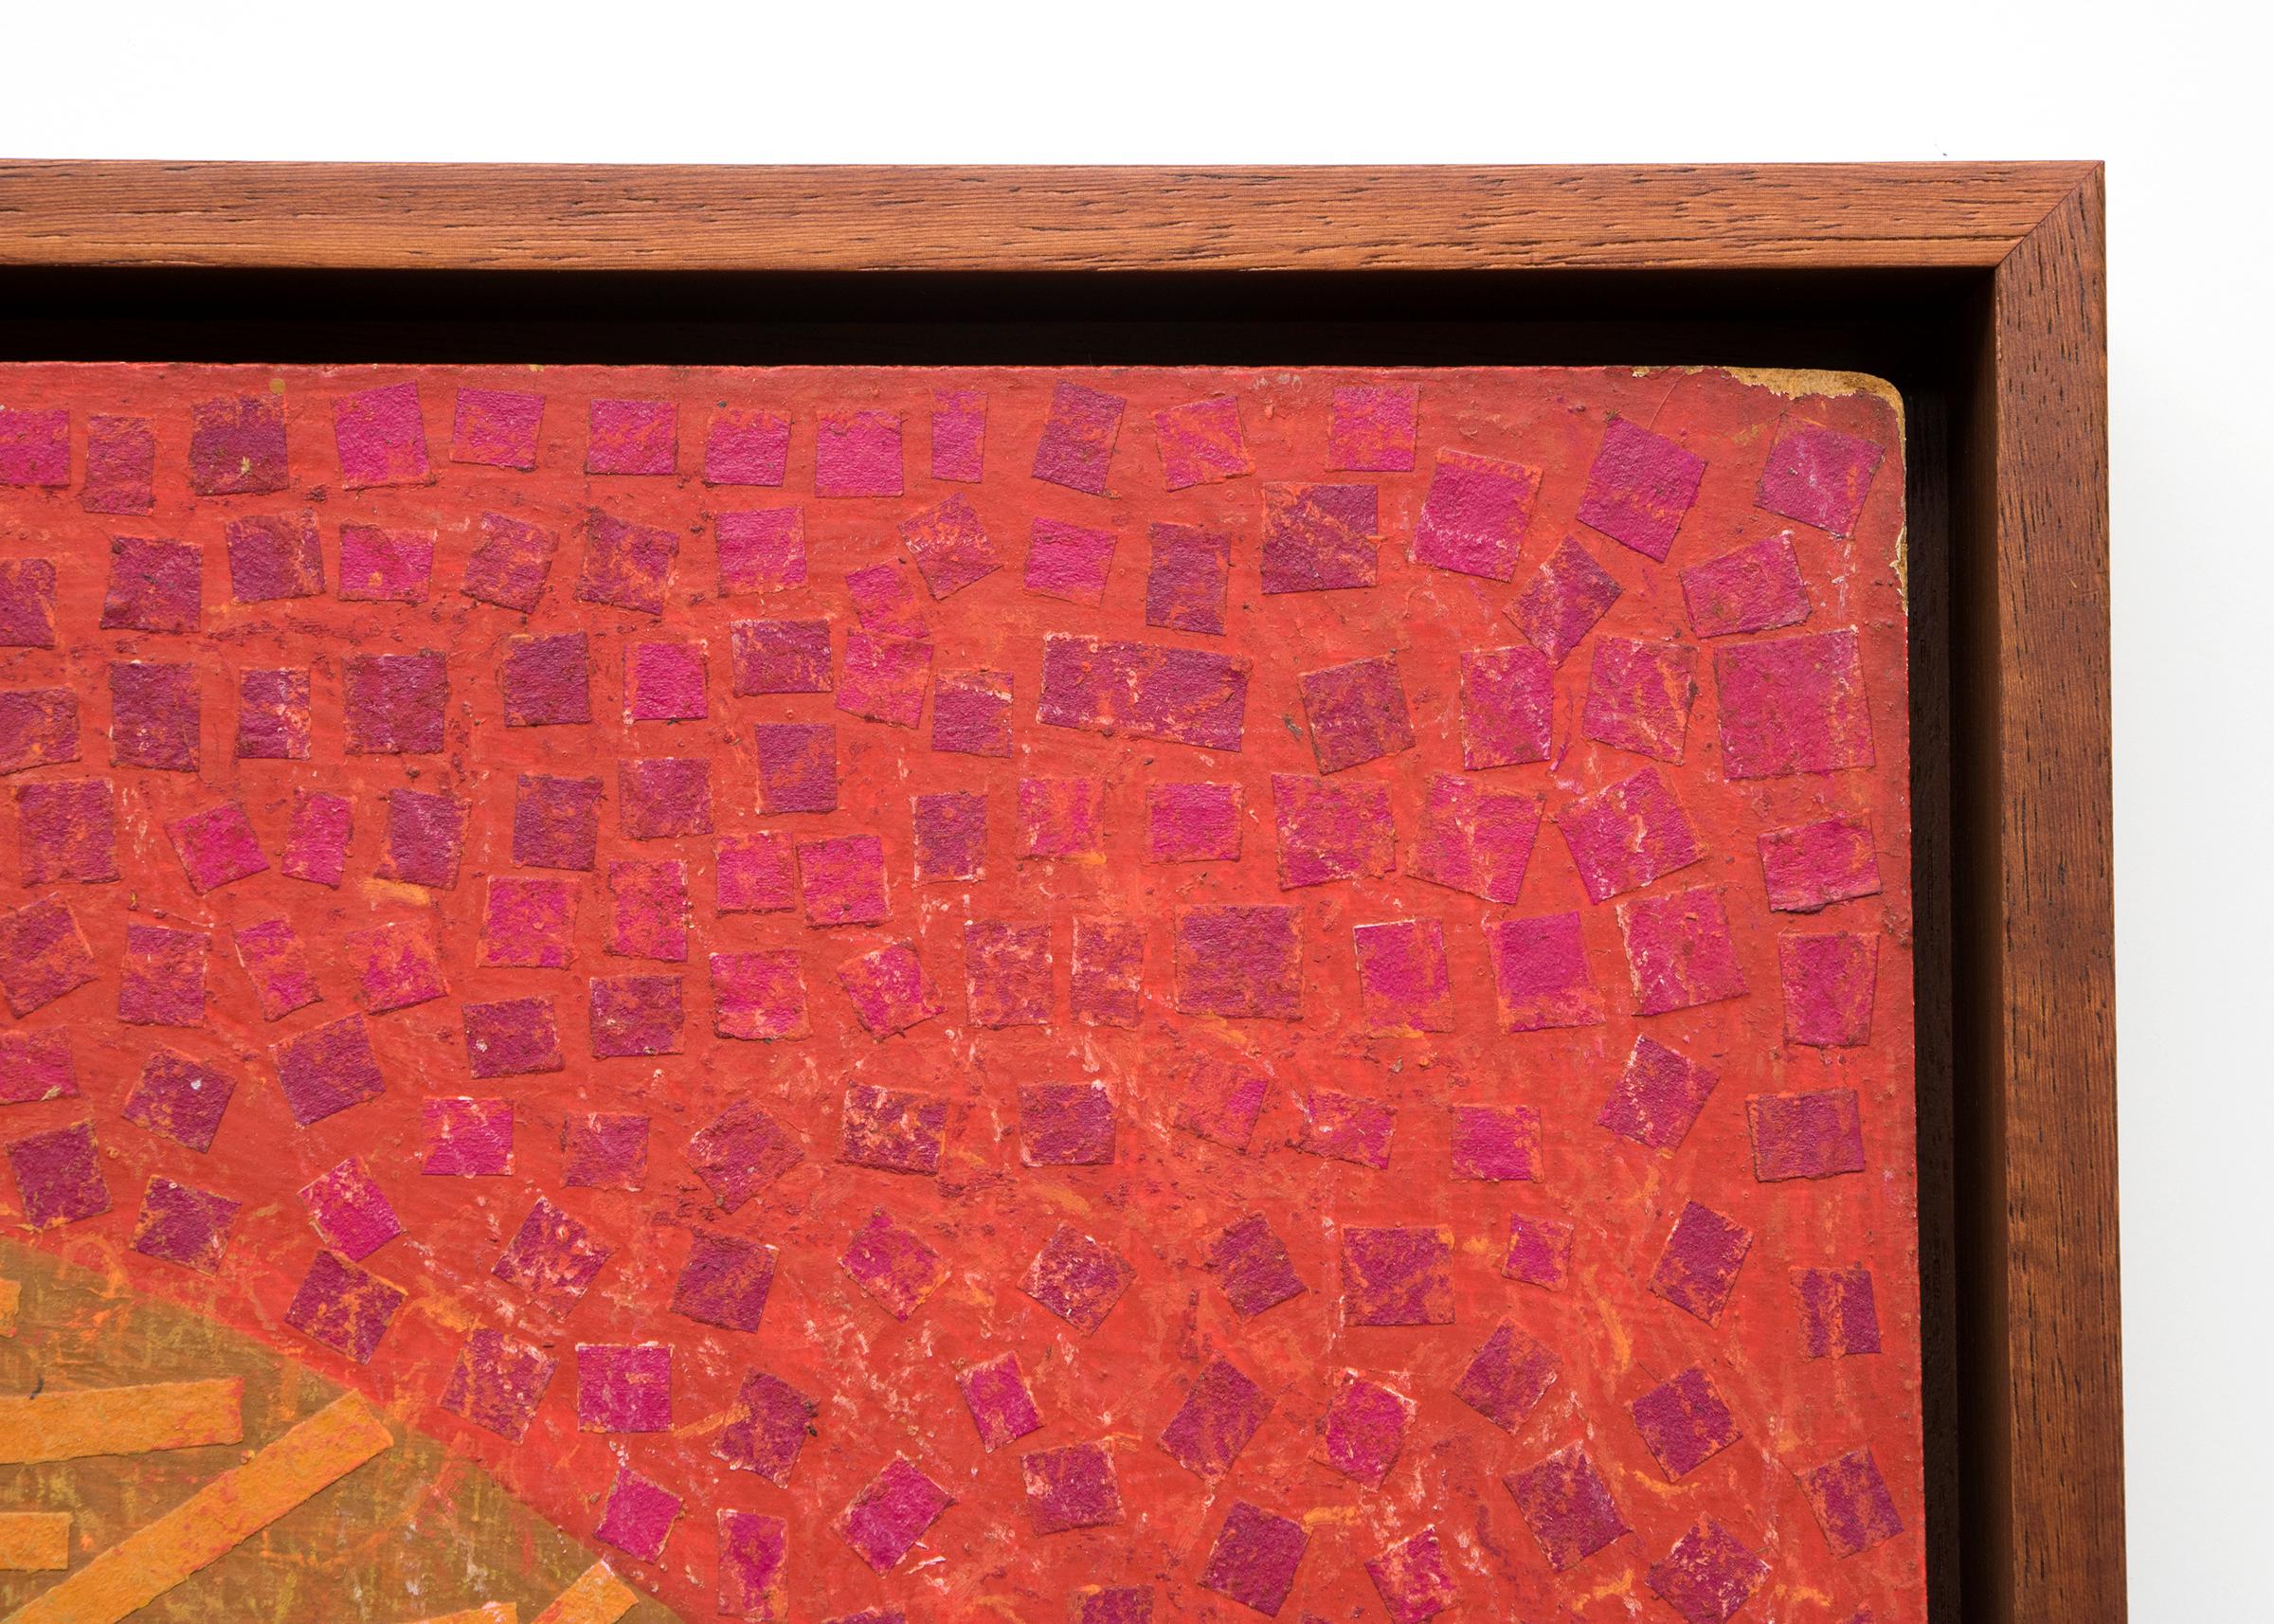 Nu de Pistachio, collage de techniques mixtes des années 1970, collage de papier sur panneau, orange rouge - Orange Figurative Art par Margo Hoff